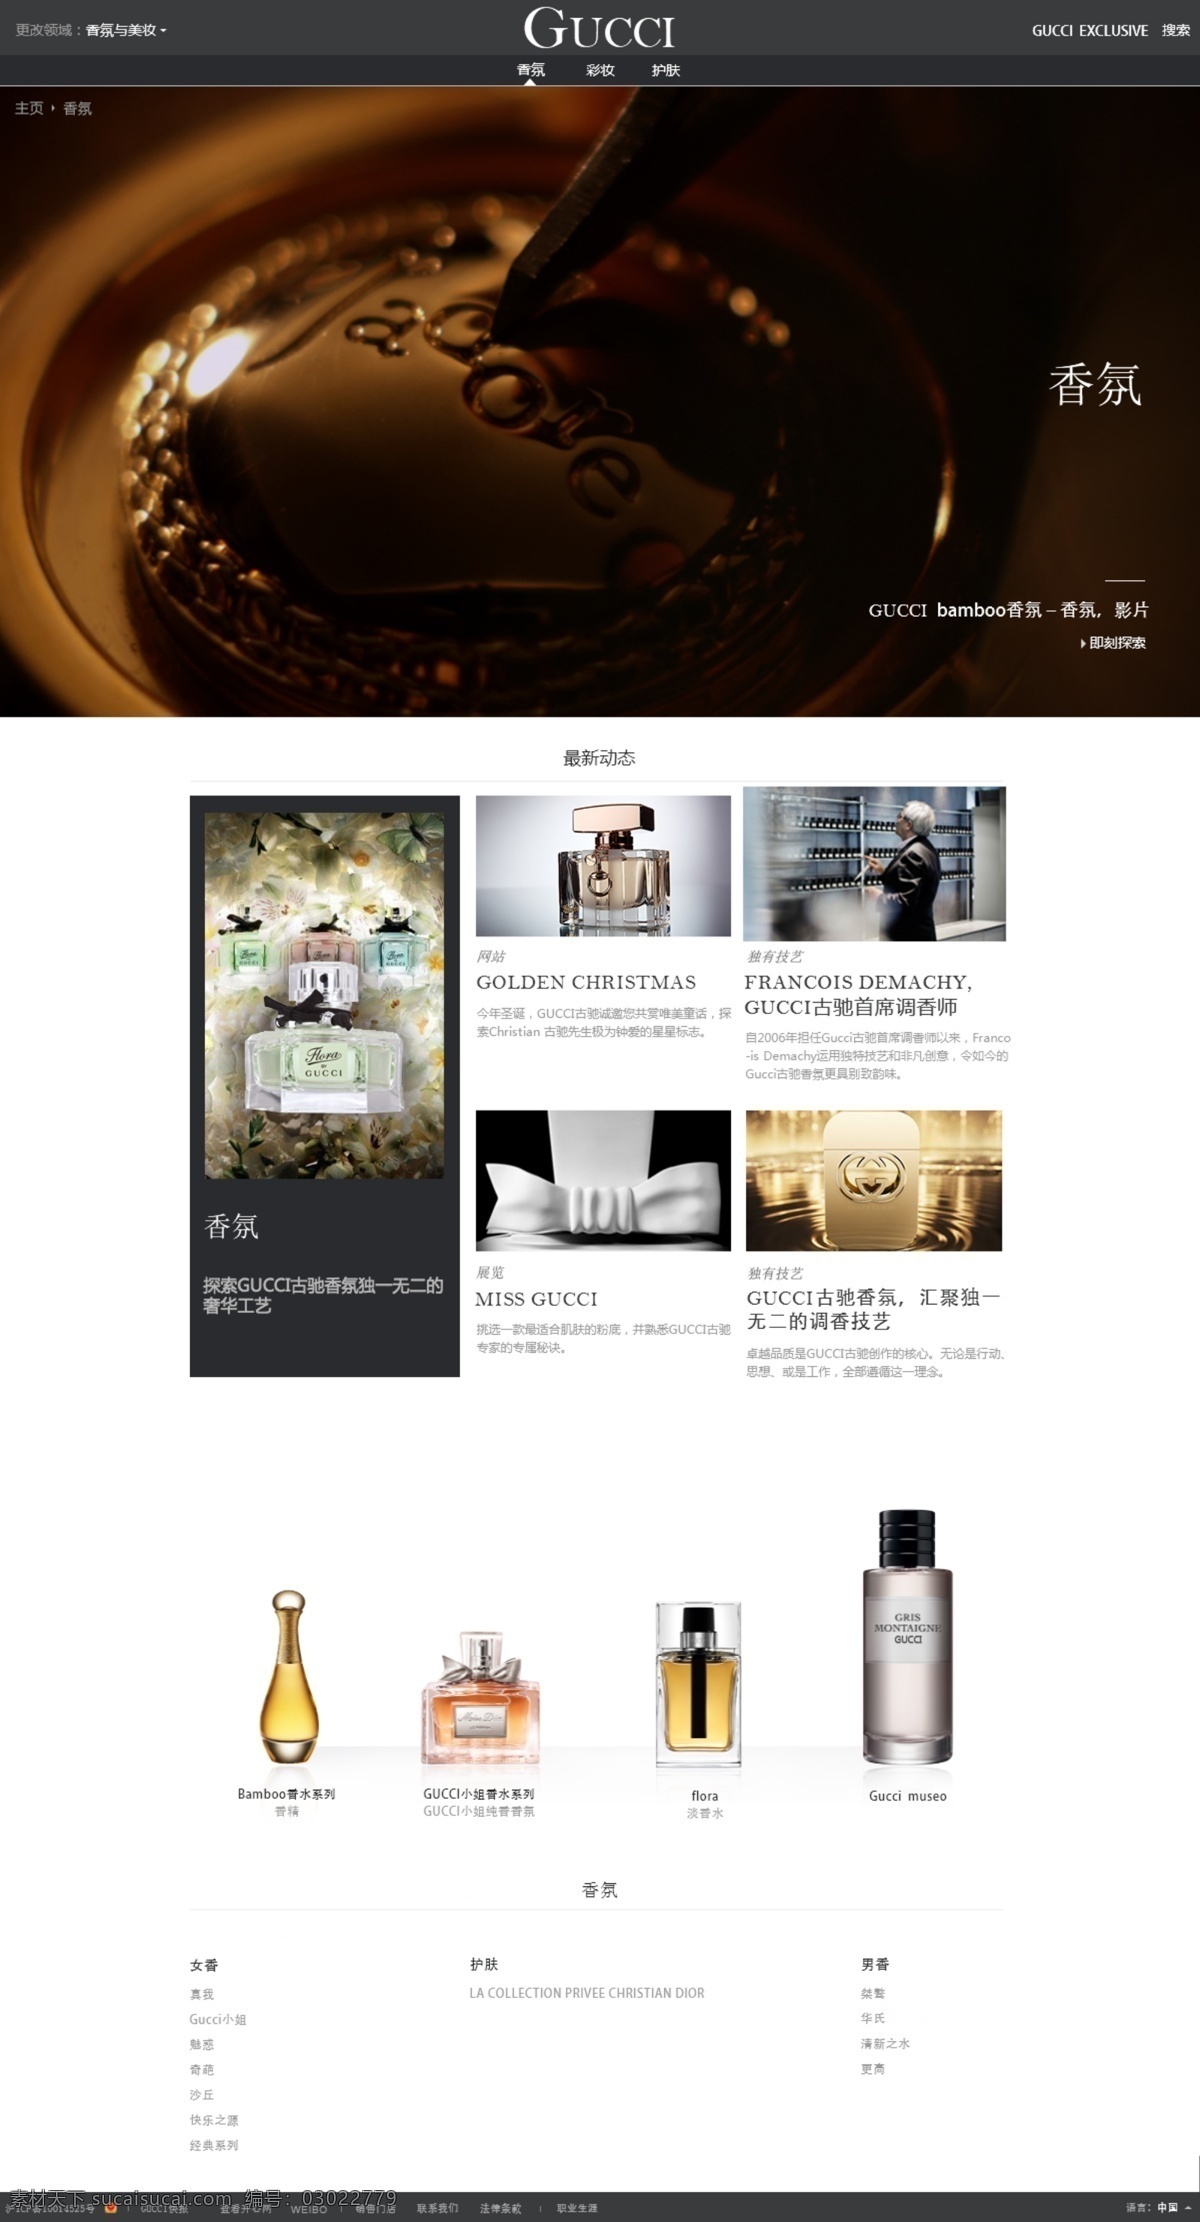 gucci 香水 网站设计 香氛 网页设计 网页 时尚 大气 清新 简约 企业站 首页 香水网站 白色